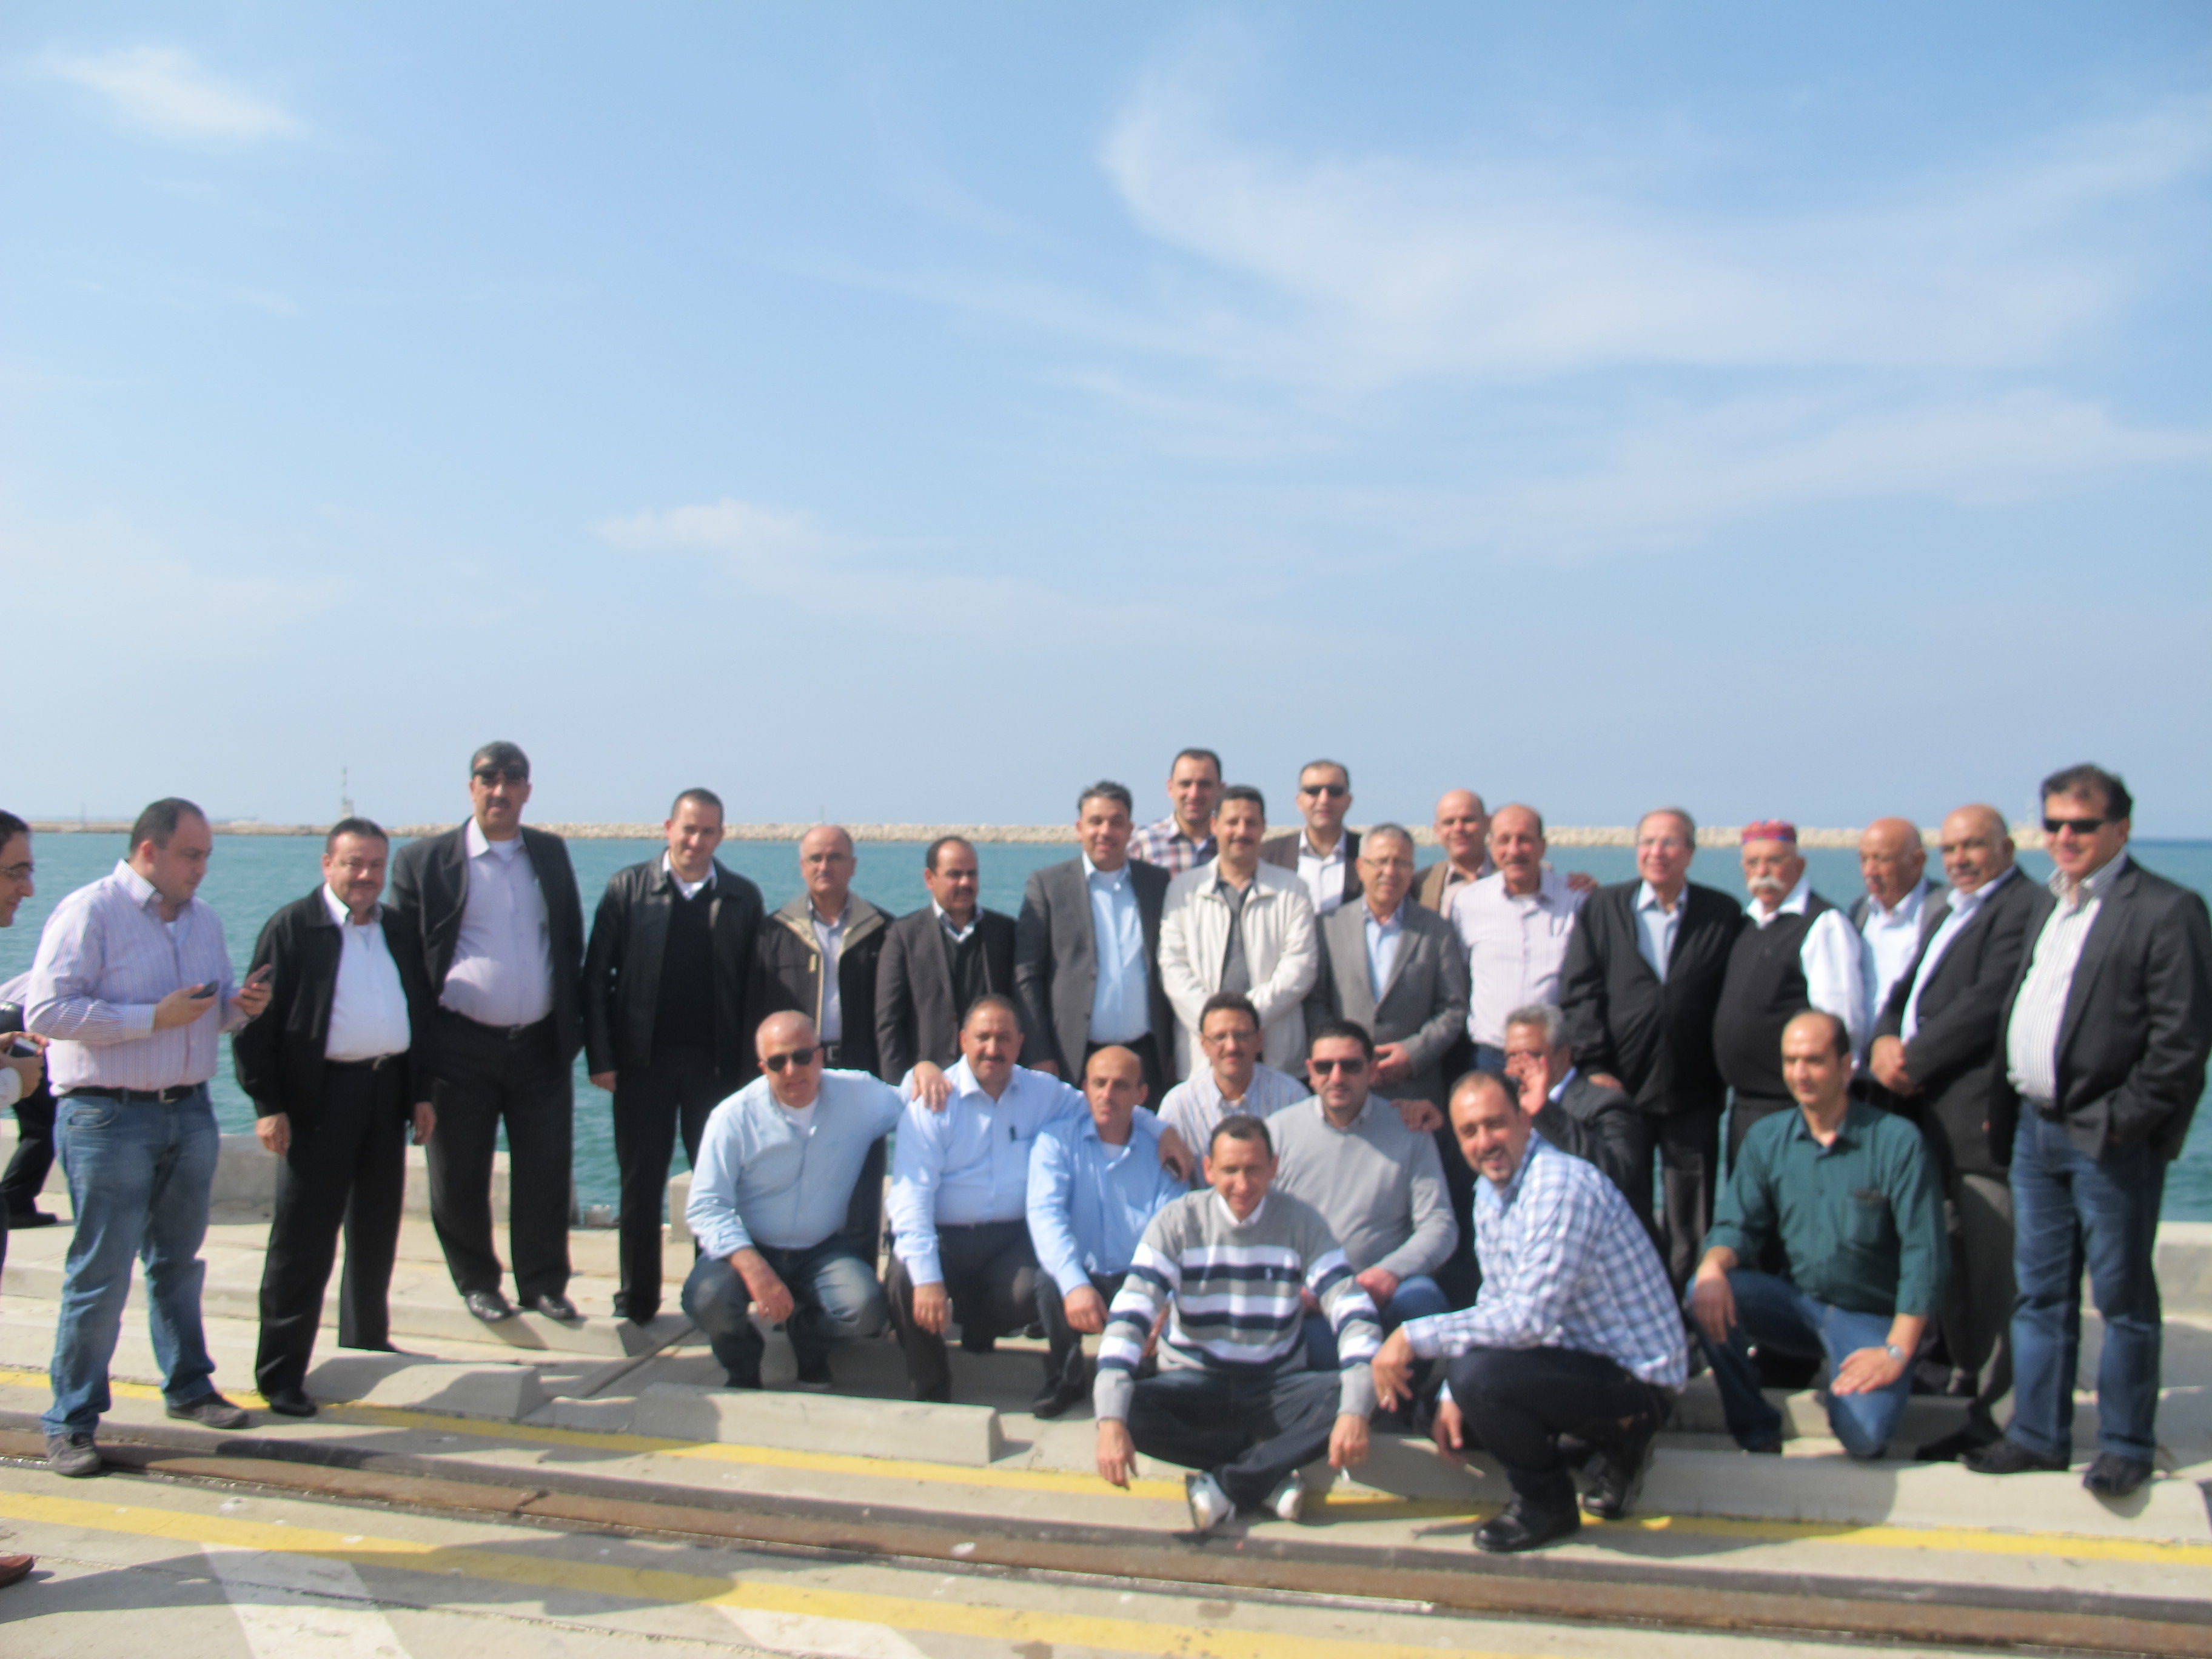 غرفة تجارة وصناعة نابلس وعدد من اعضاء هيئتها العامة يزورون ميناء حيفا 25/3/2014